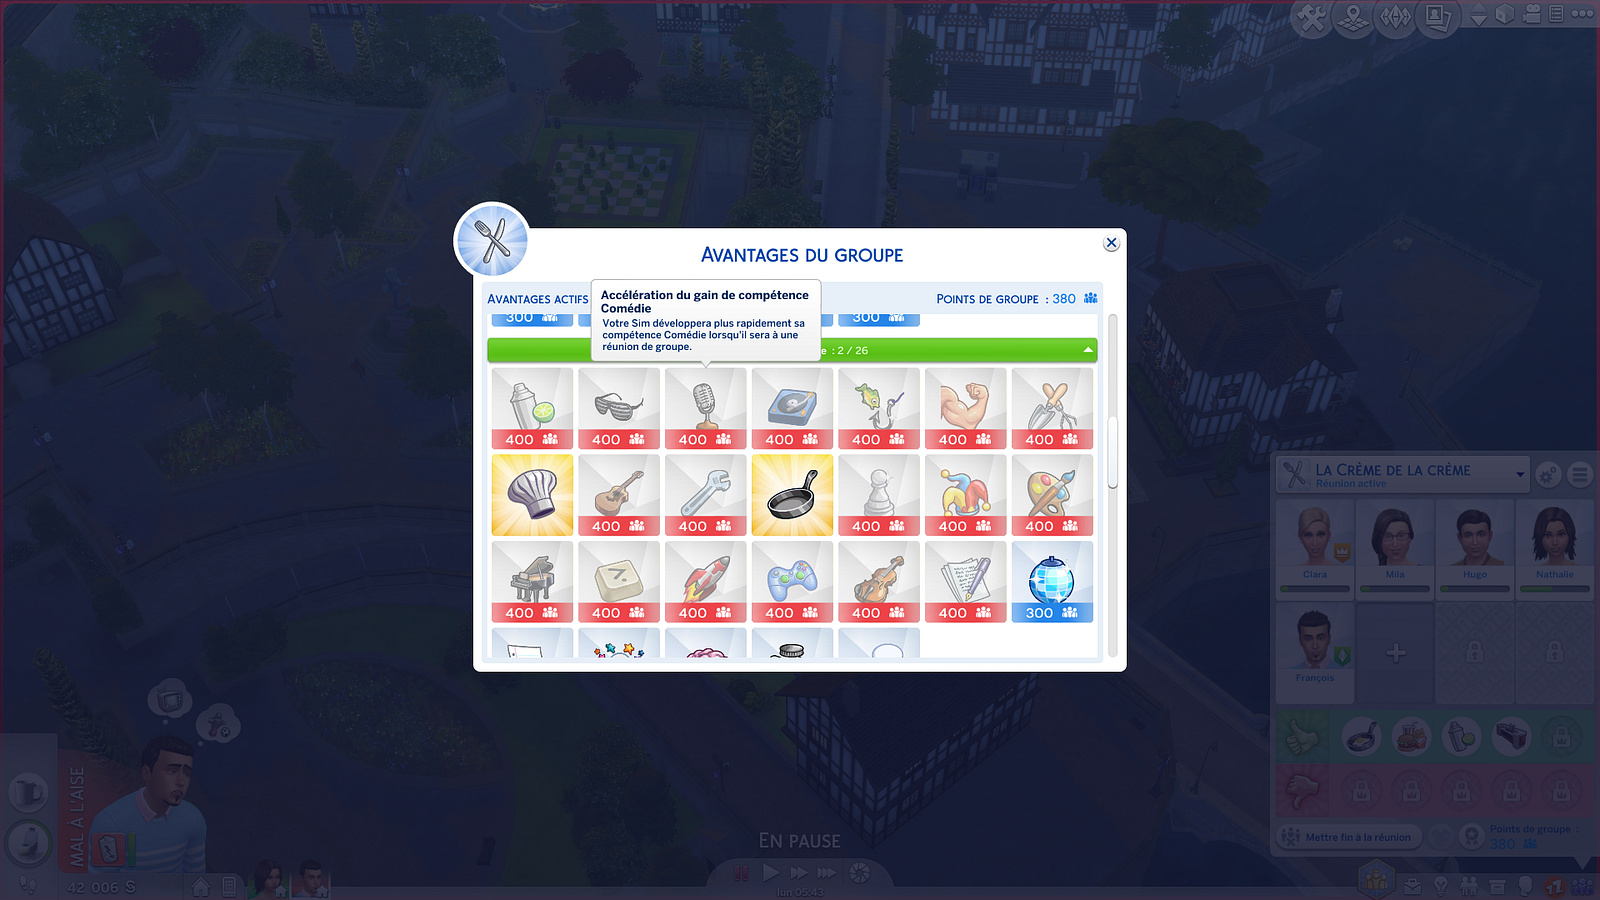 Les Sims 4 Vivre Ensemble intègre un système de récompenses qui, au fil du temps, vous permettant d'améliorer votre groupe